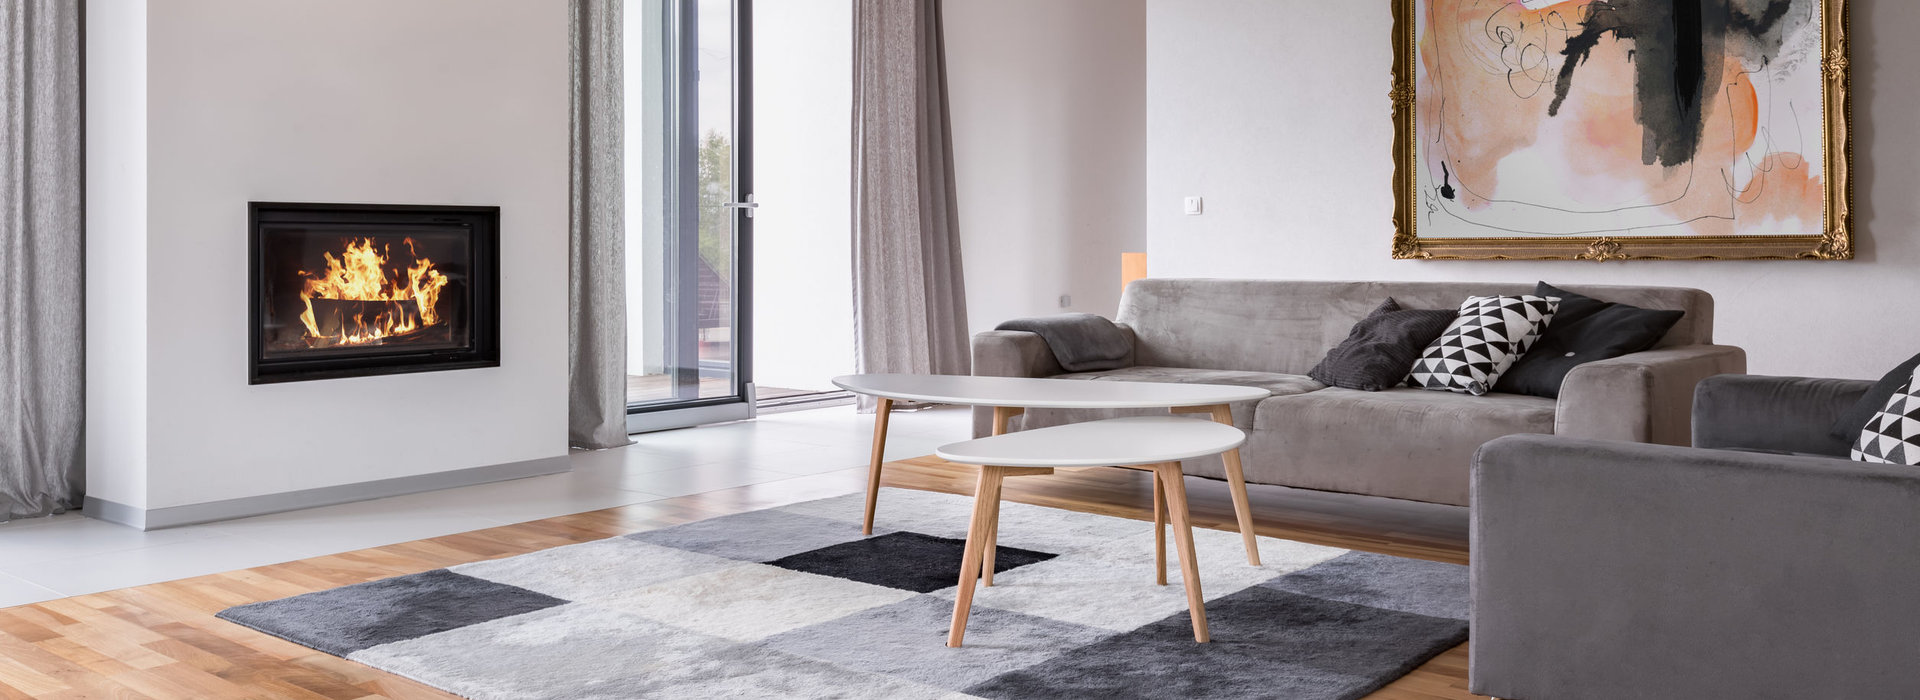 Svenska möbler i Spanien